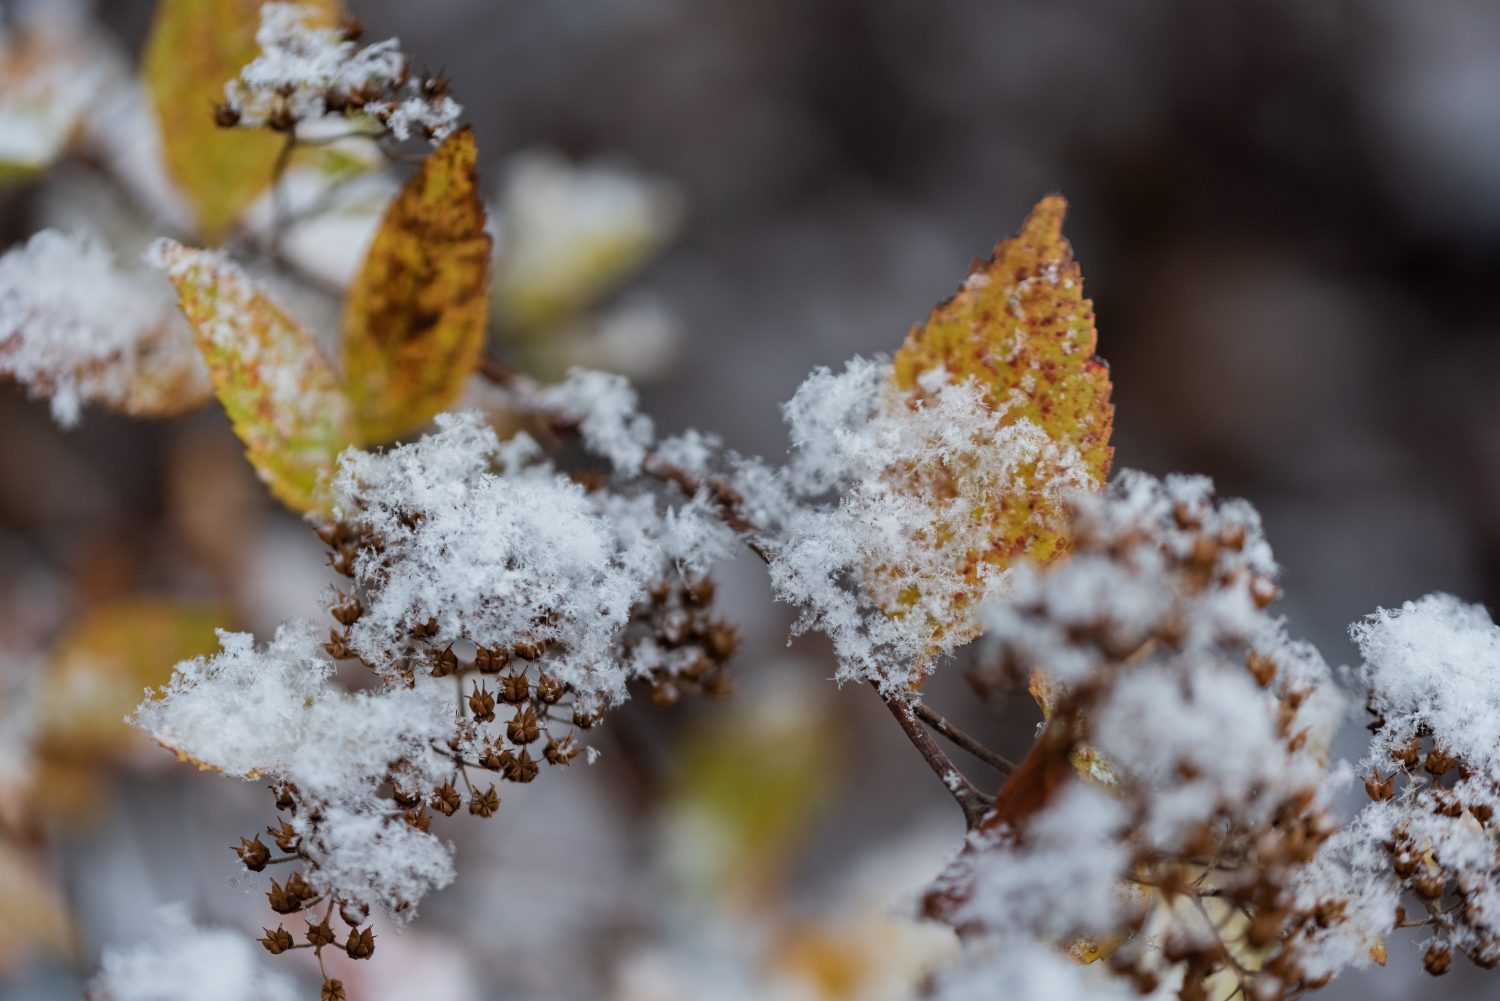 La prima neve sulle piante del giardino.  Tempo autunnale.  Fiocchi di neve sulle foglie delle piante verdi.  Il cambio delle stagioni e il raffreddamento nel caldo.